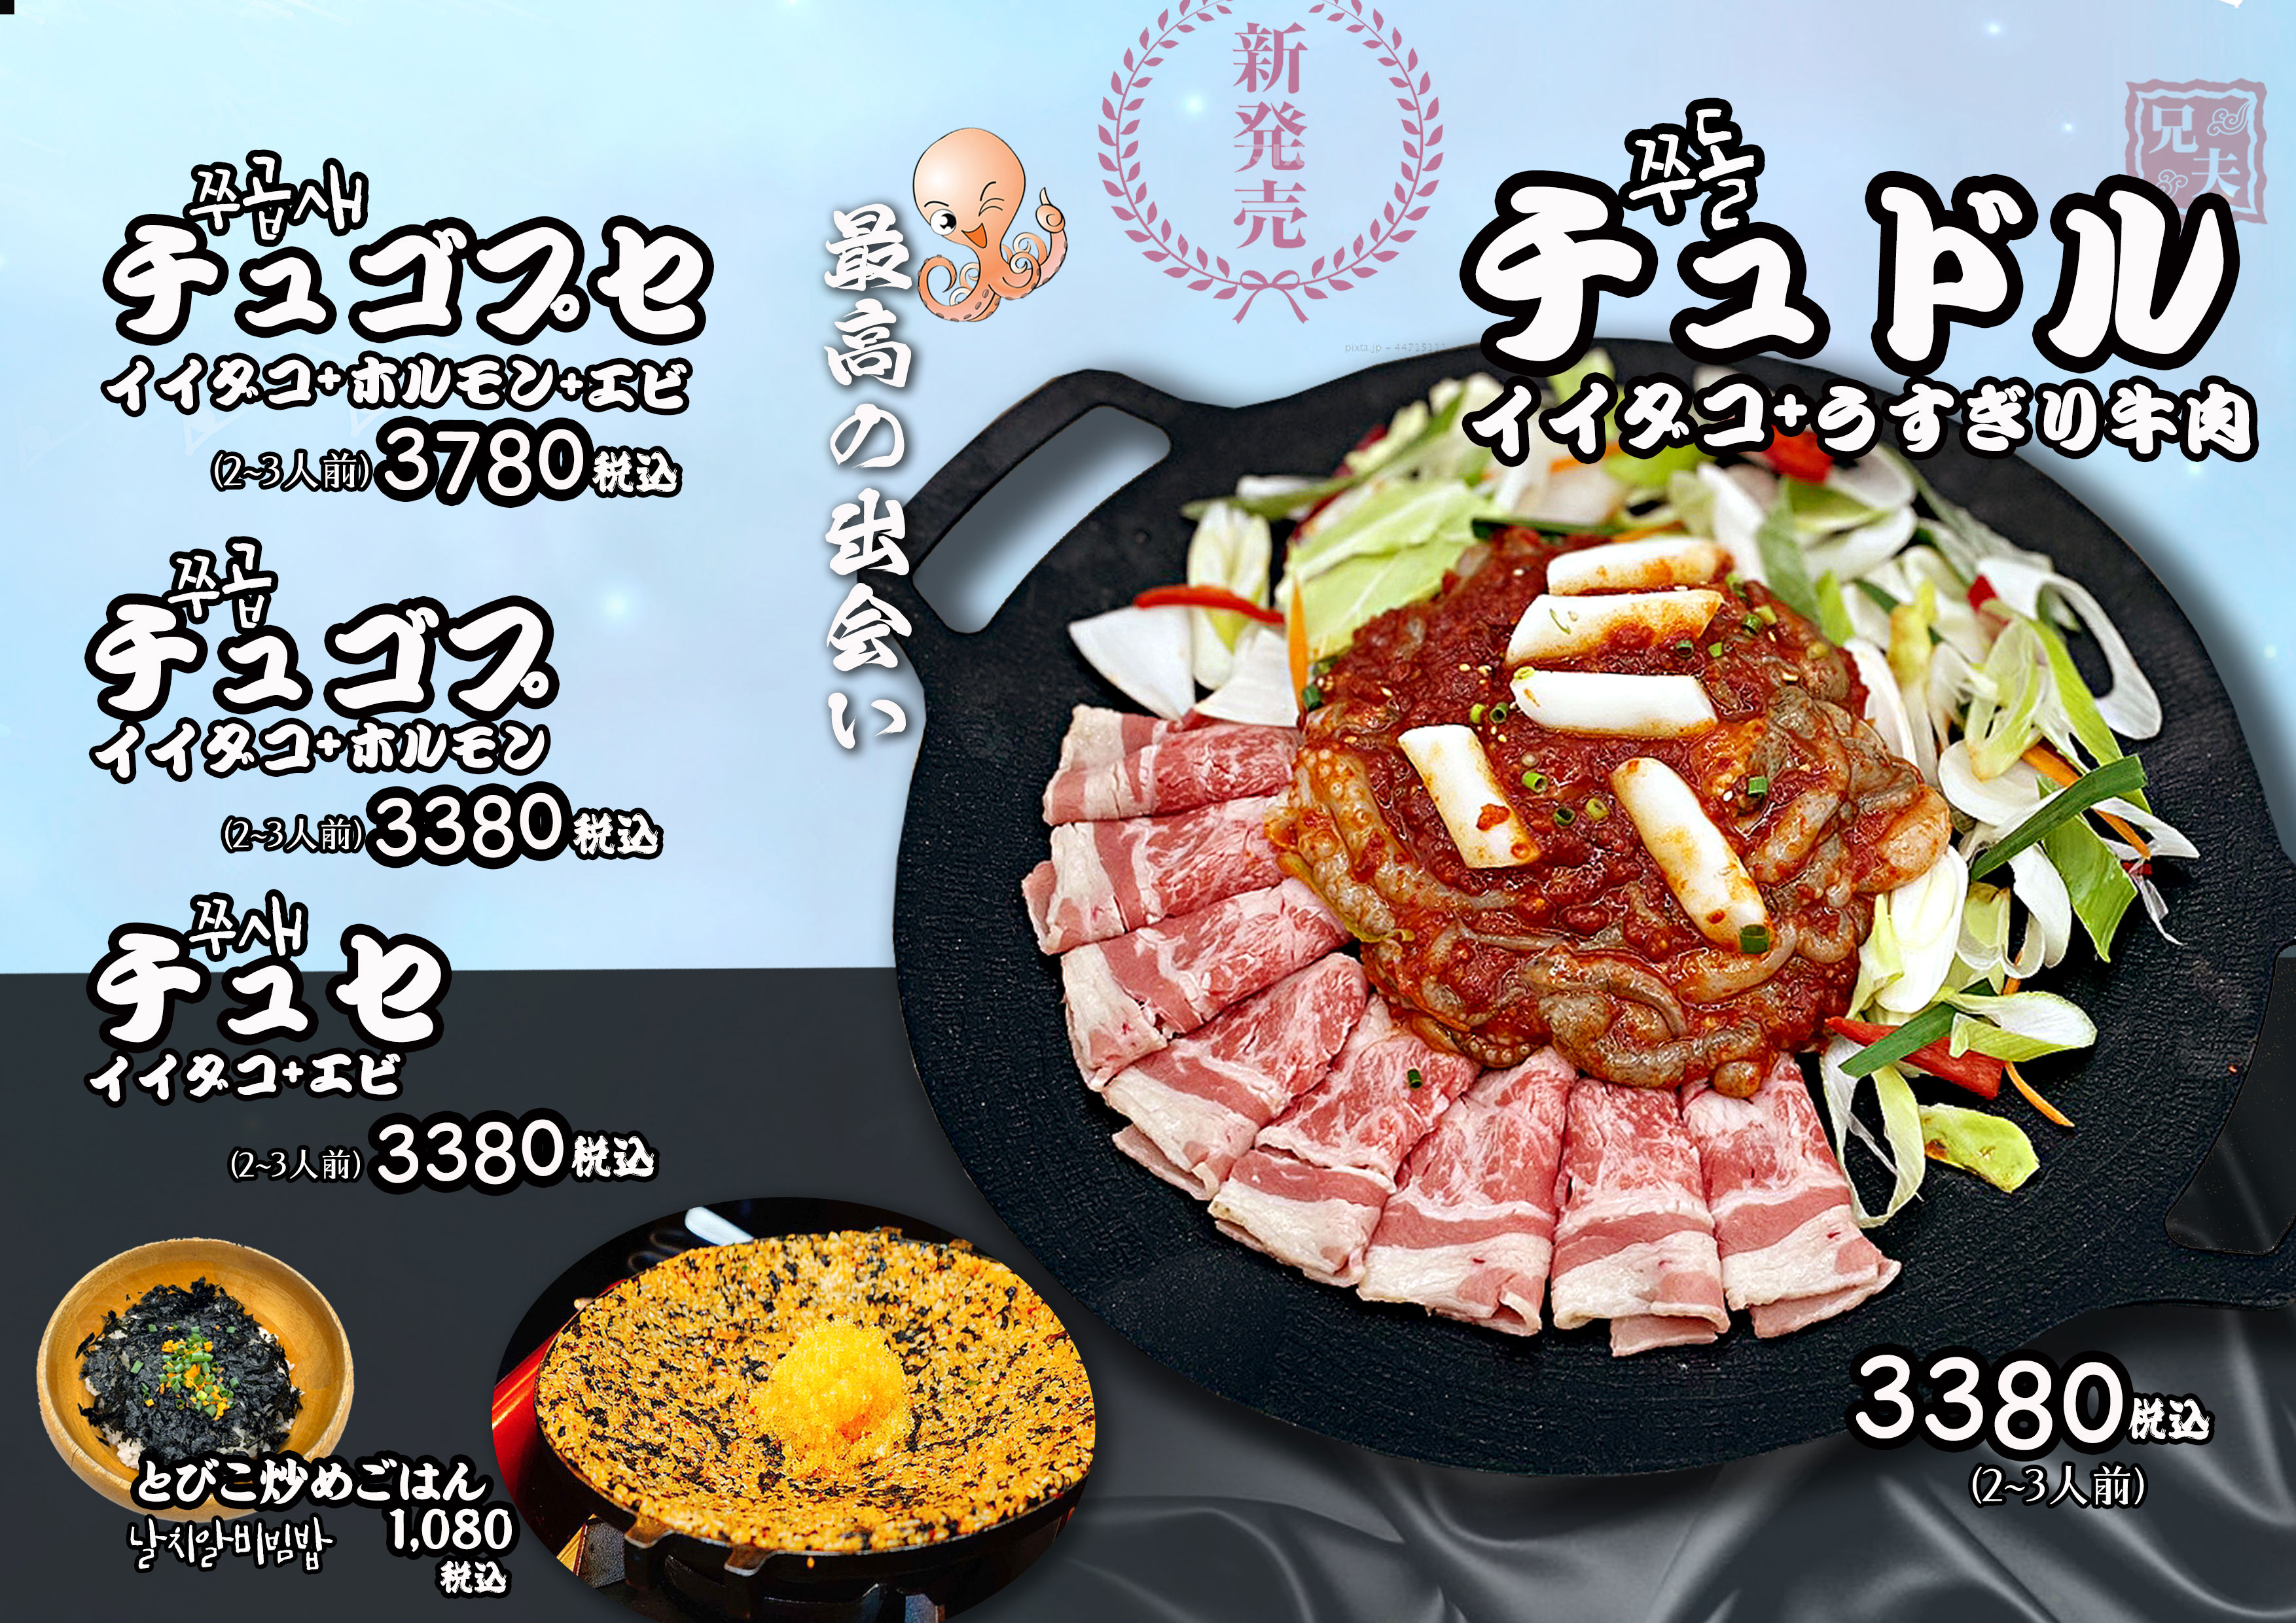 チュドル(イイダコ+うすぎり牛肉)のイメージ